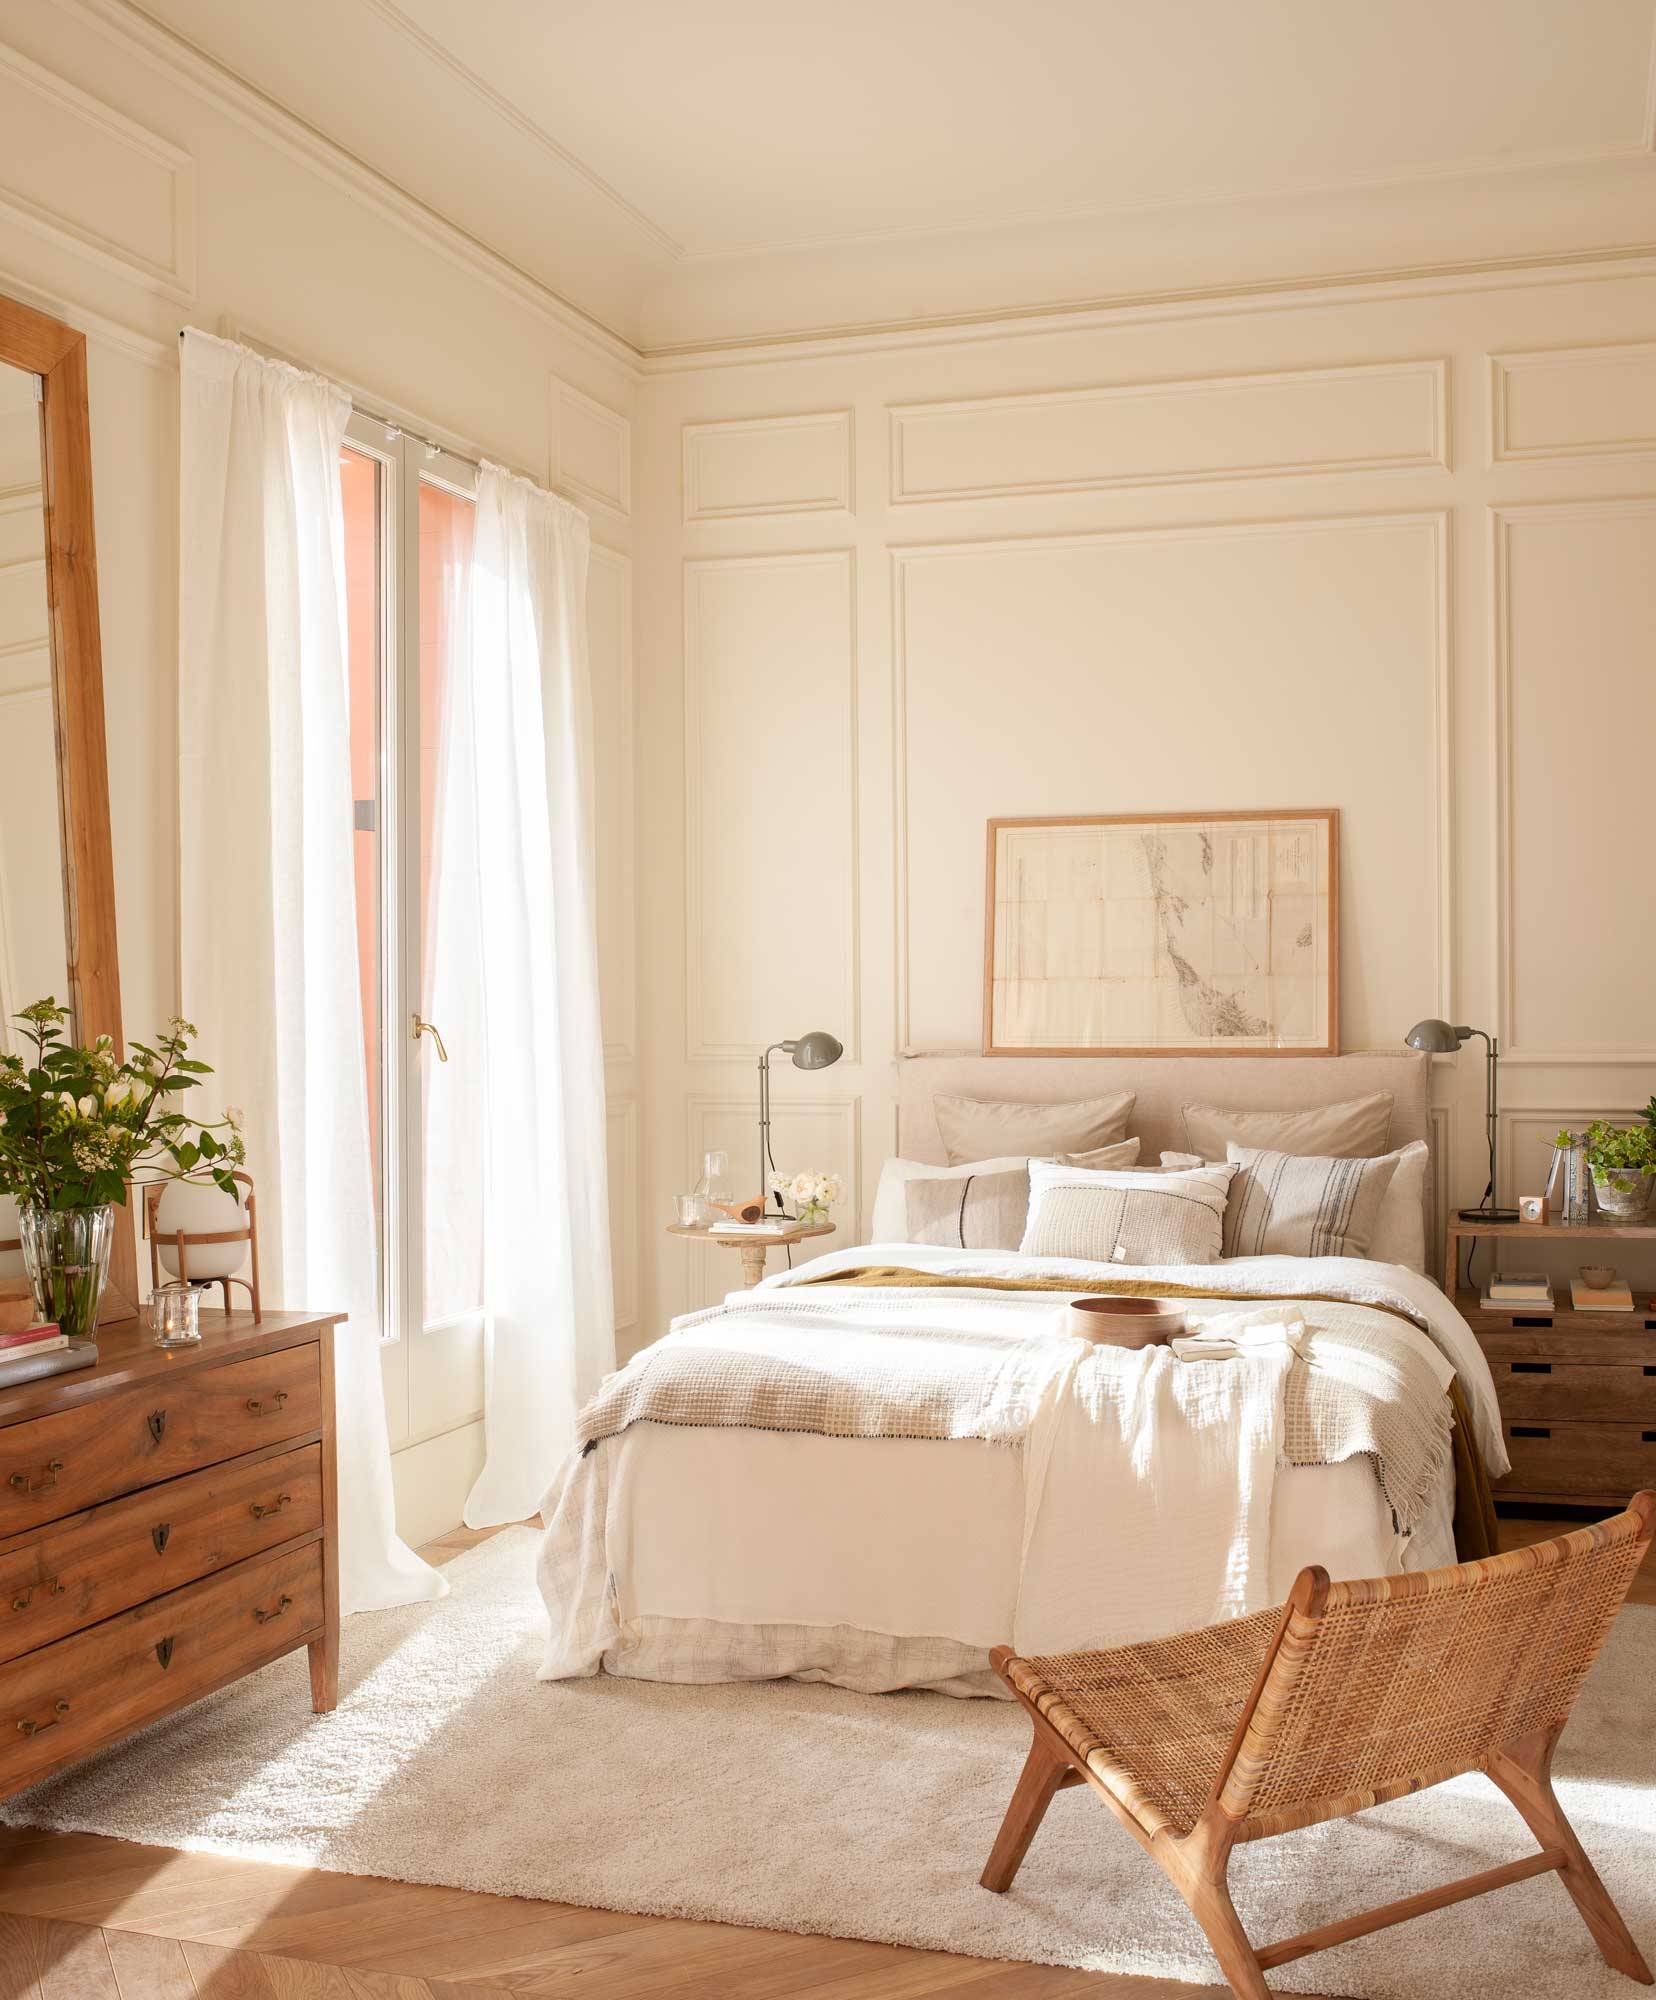 Dormitorio clásico con molduras y ropa de cama blanca. 